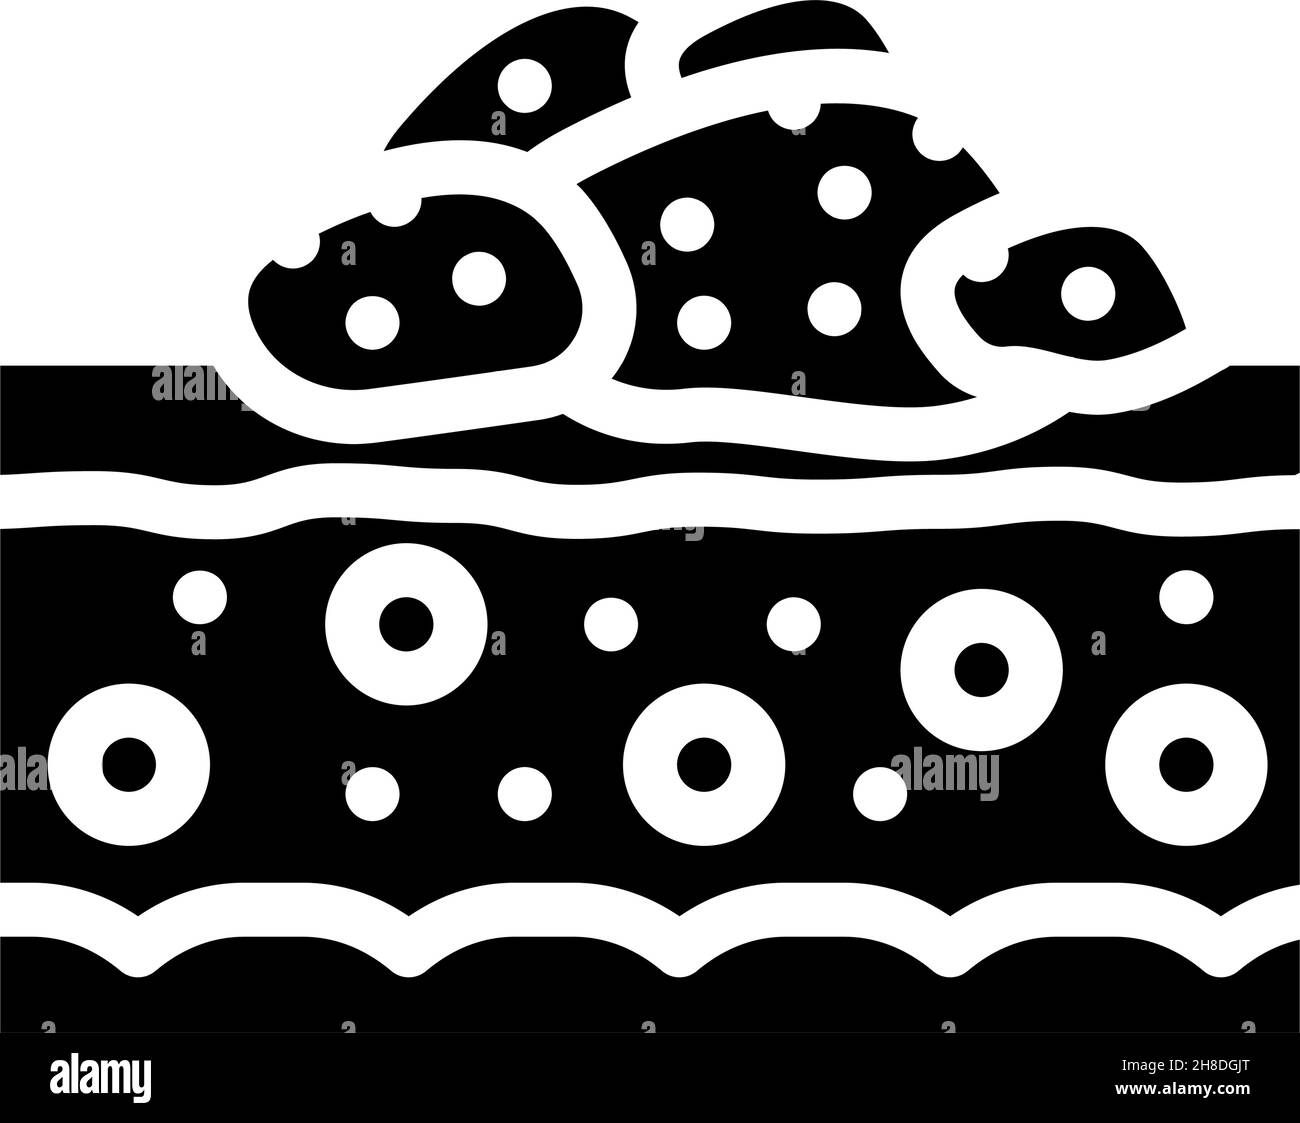 papilloma skin disease glyph icon vector illustration Stock Vector